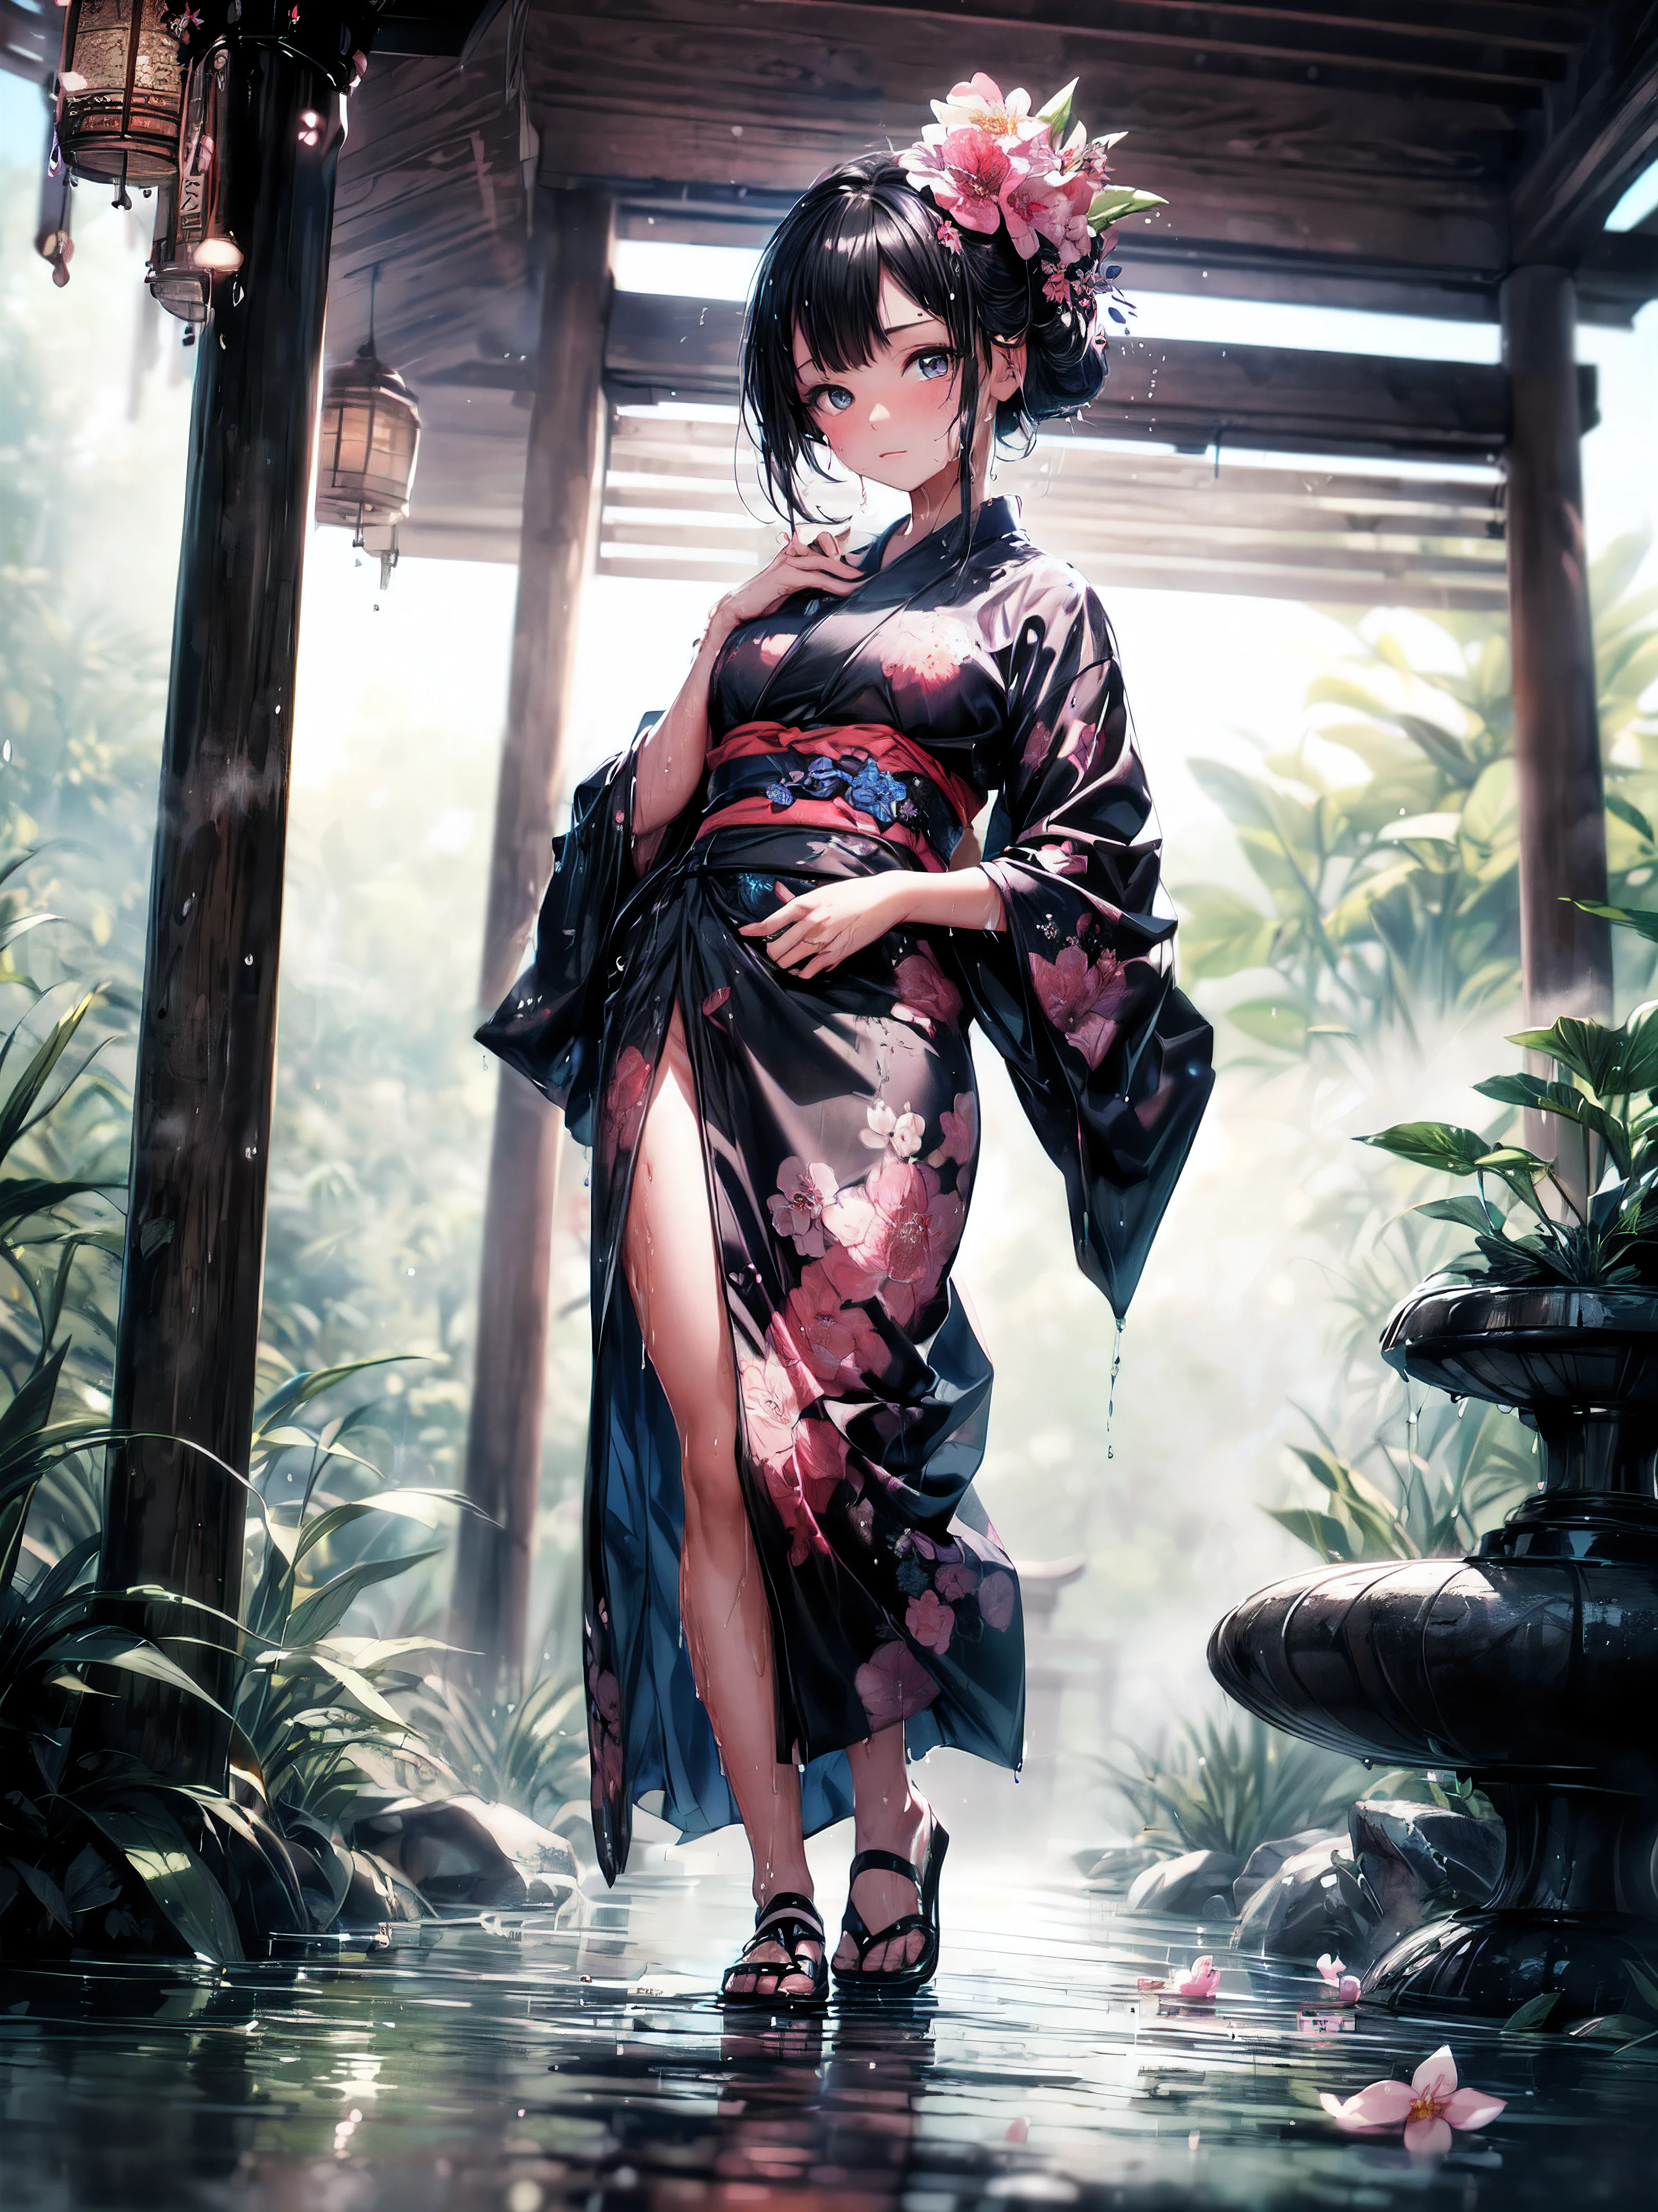 (tout le corps), (Une fillette de 7 ans:1.2), (Très jeune petite fille), changement, (seulement), (petite poitrine), (grand angle), photo brute, Esthétique, Convoluté, Récompensé, clair-obscur, Meilleure qualité, contexte détaillé, (atmosphère brumeuse:1.2), (dure journée de pluie:1.1),((Fille en kimono de coton noir:1.2)), grand kimono en coton noir, grand kimono noir avec une texture en coton, très longue manche kimono noire, meilleures rides, De vraies rides, Meilleures ombres, (mouillé, mouillé body, mouillé hair, mouillé skin, very mouillé black kimono, reflection on the mouillé kimono, broderie délicate de fleurs de cerisier, de subtiles gouttelettes d&#39;eau:1.15), (pulvérisateur d&#39;eau:1.1), (Kimono en tissu, meilleure ride de kimono, Enveloppement de mucus transparent), (Parcourez le (Brume sombre Jardin Zen)), (emplacement réel), yeux délicats et beaux, Pose décontractée, Textures détaillées, posant, (corps anatomiquement correct, Visage détaillé, (kimono aux textures très détaillées avec motif floral), (cheveux noirs), cheveux volumineux, ornement de cheveux, Couleurs vives, Expression calme, regarde le spectateur, paysage paisible, sensation de propreté et de fraîcheur, De l’eau belle et détaillée